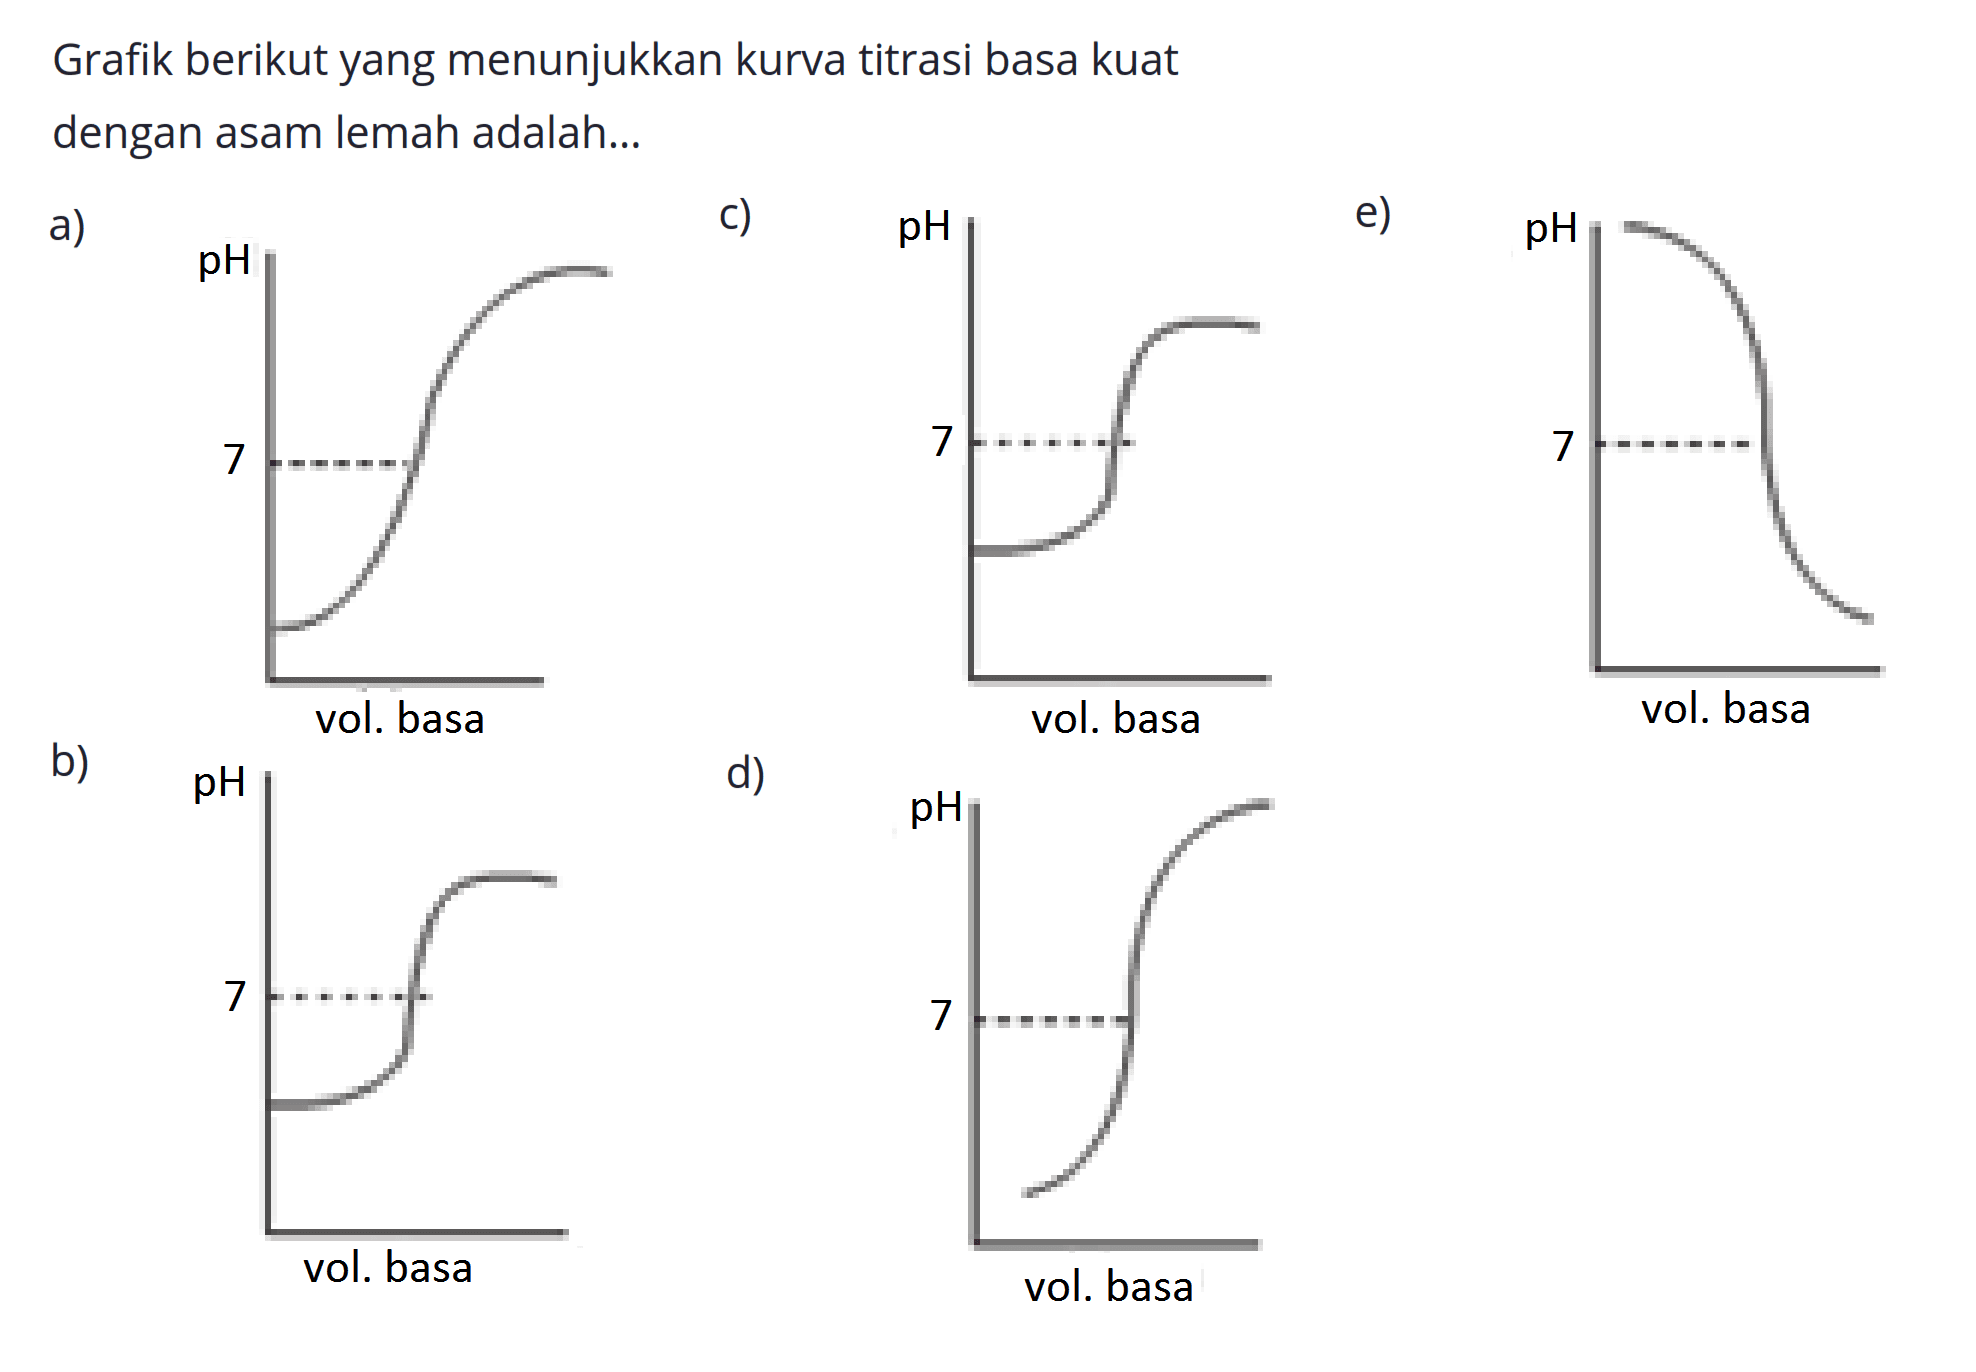 Grafik berikut yang menunjukkan kurva titrasi basa kuat dengan asam lemah adalah...
a)
c)
e)
b)
d)